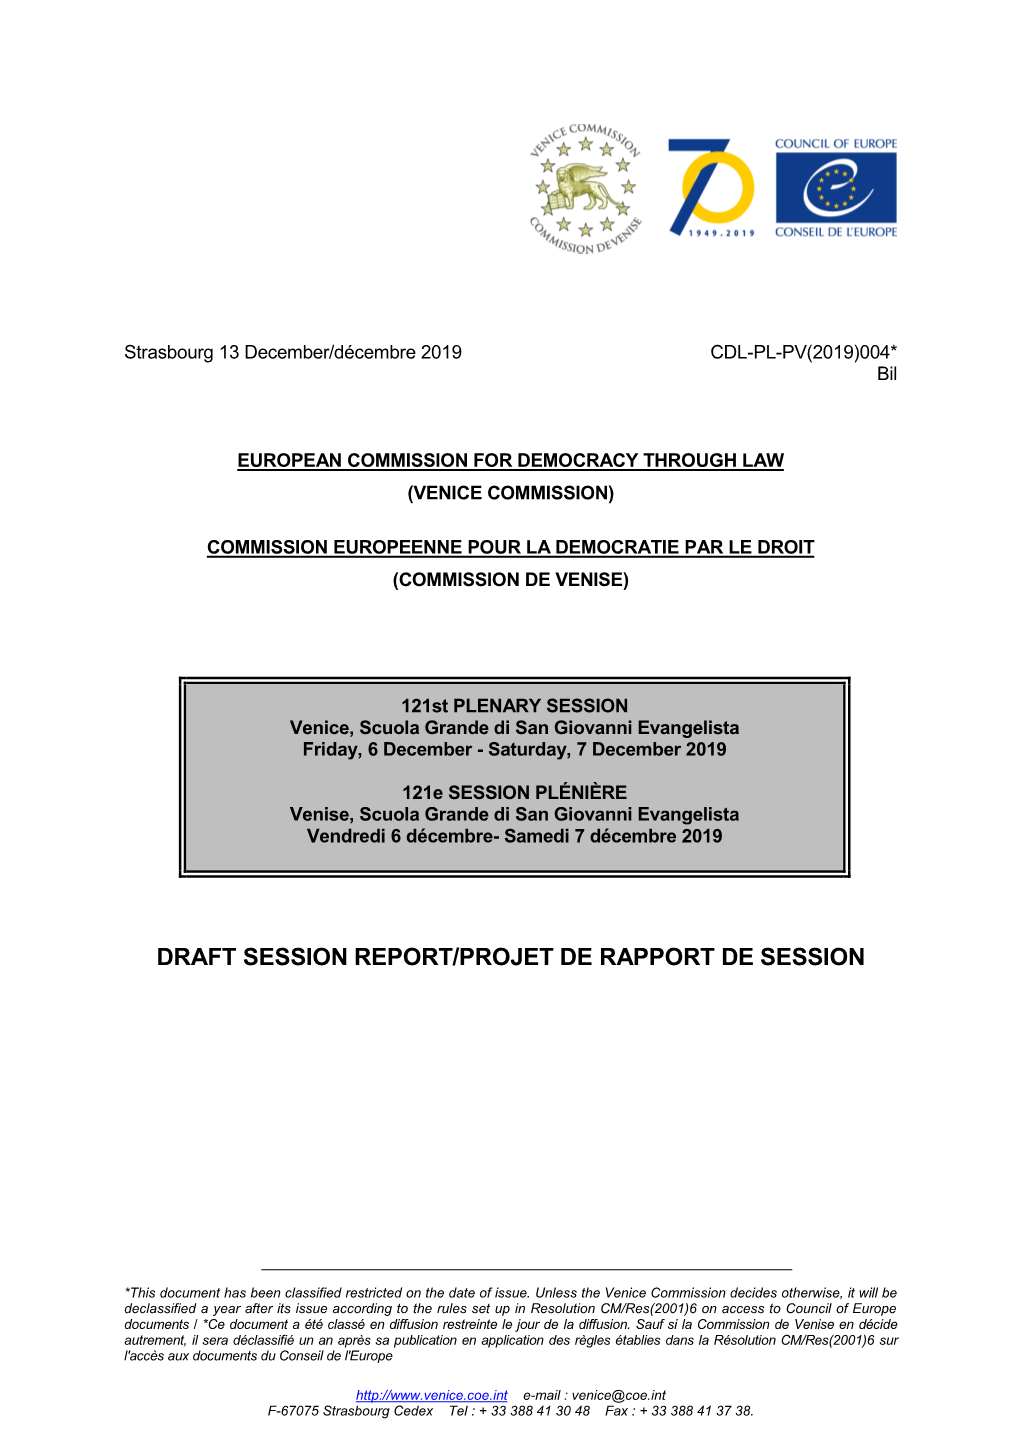 Draft Session Report/Projet De Rapport De Session